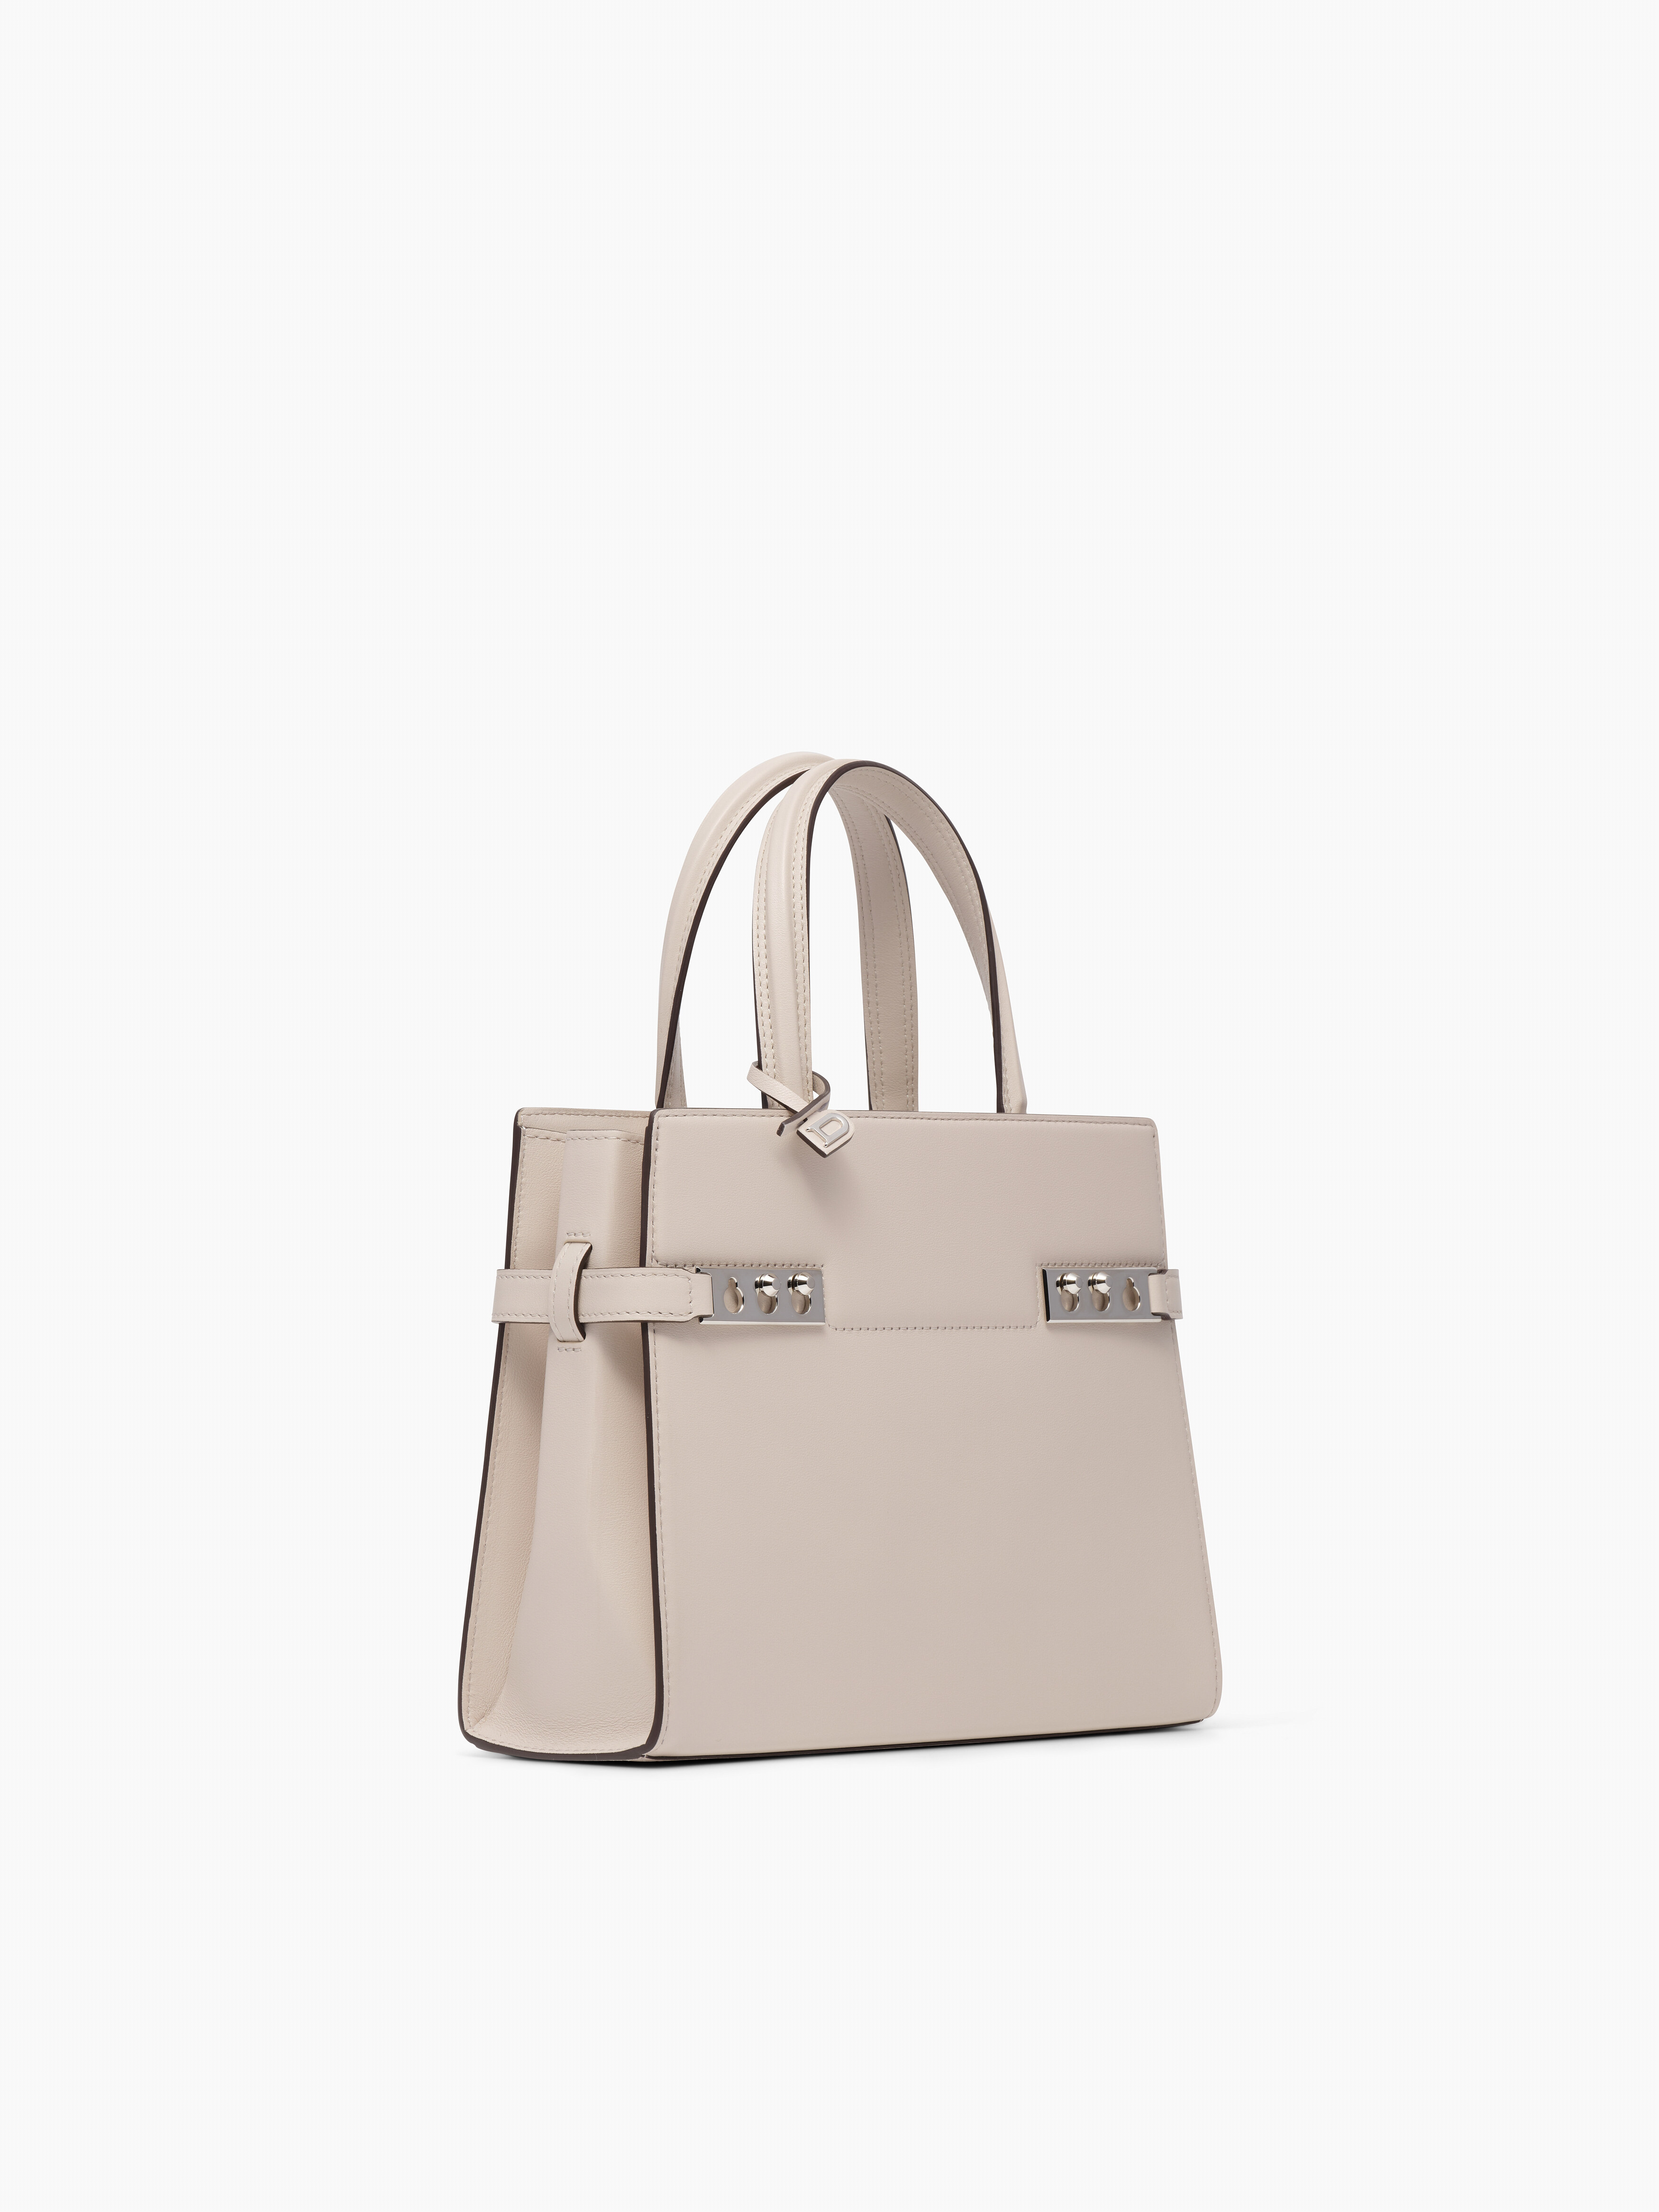 Delvaux Leather shoulder bag 31cm brown Hand bag Formal bag Ladies  Authentic | eBay